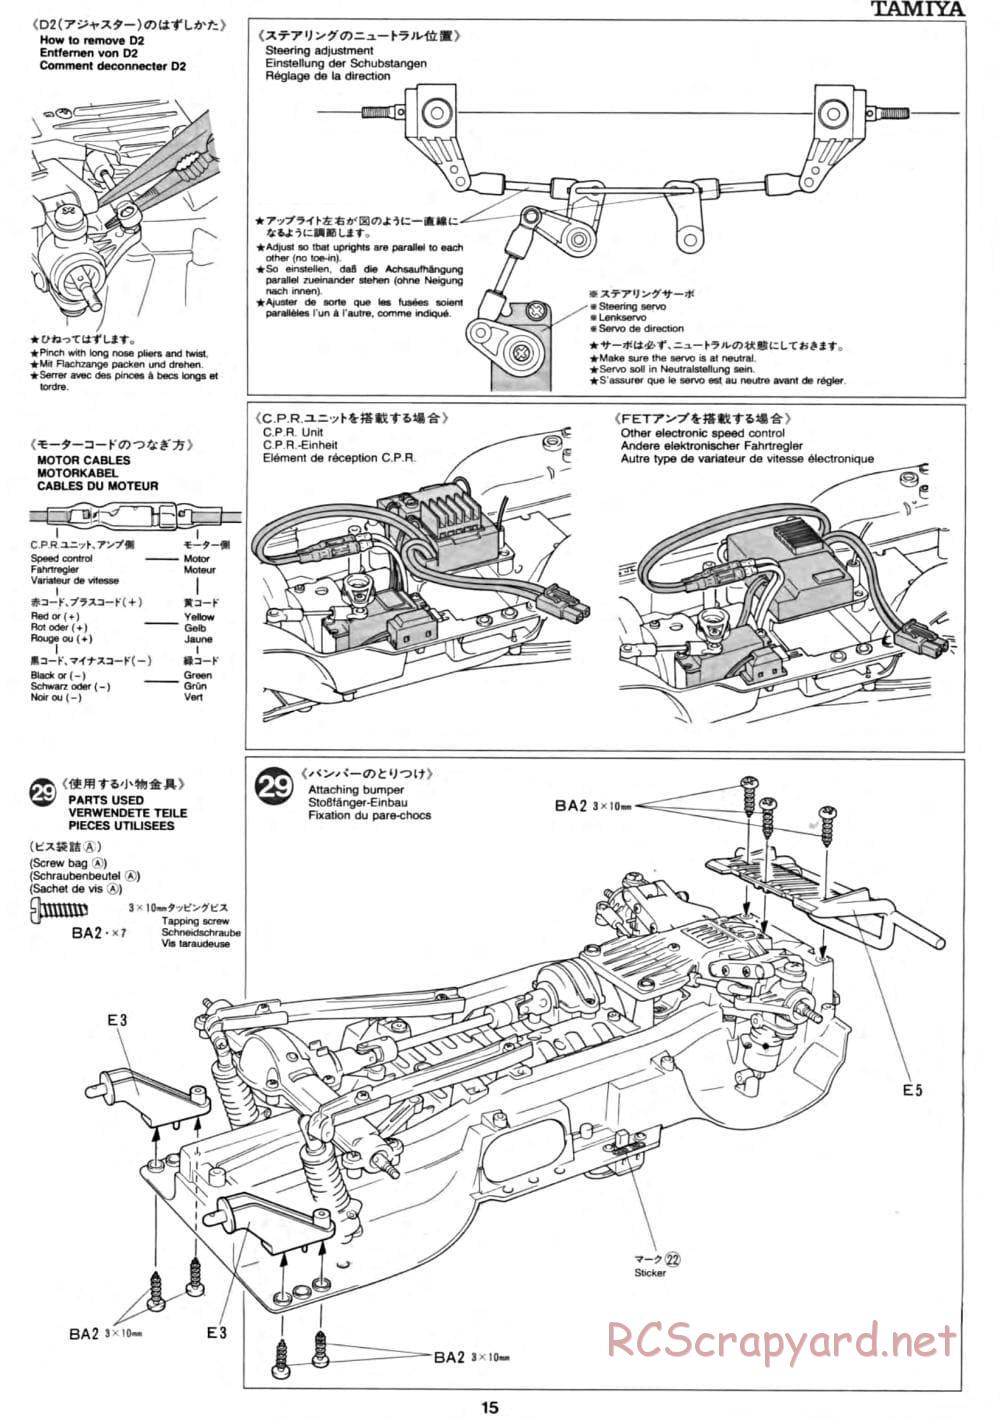 Tamiya - CC-01 Chassis - Manual - Page 15